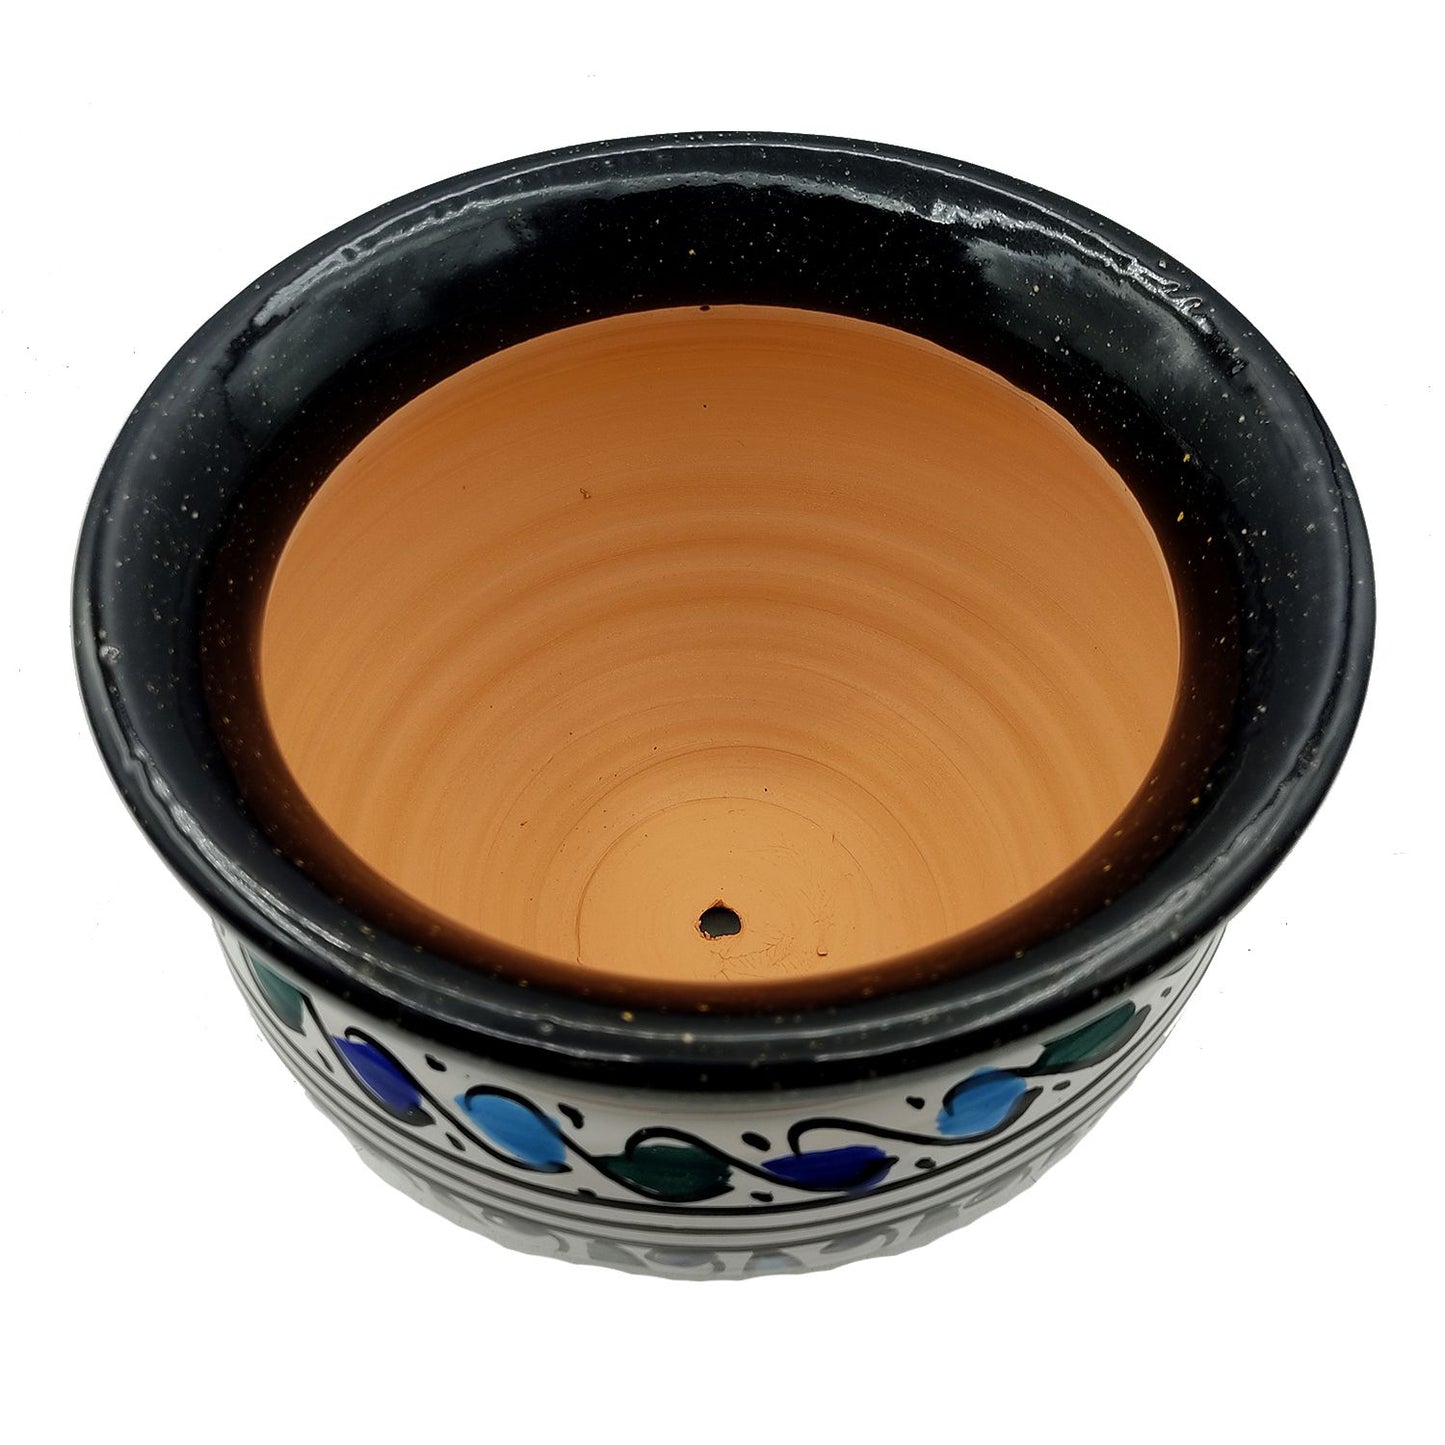 Vaso Cachepot Berbero Etnico Tunisno Marocchino Ceramica Terracotta Orientale 0411221007